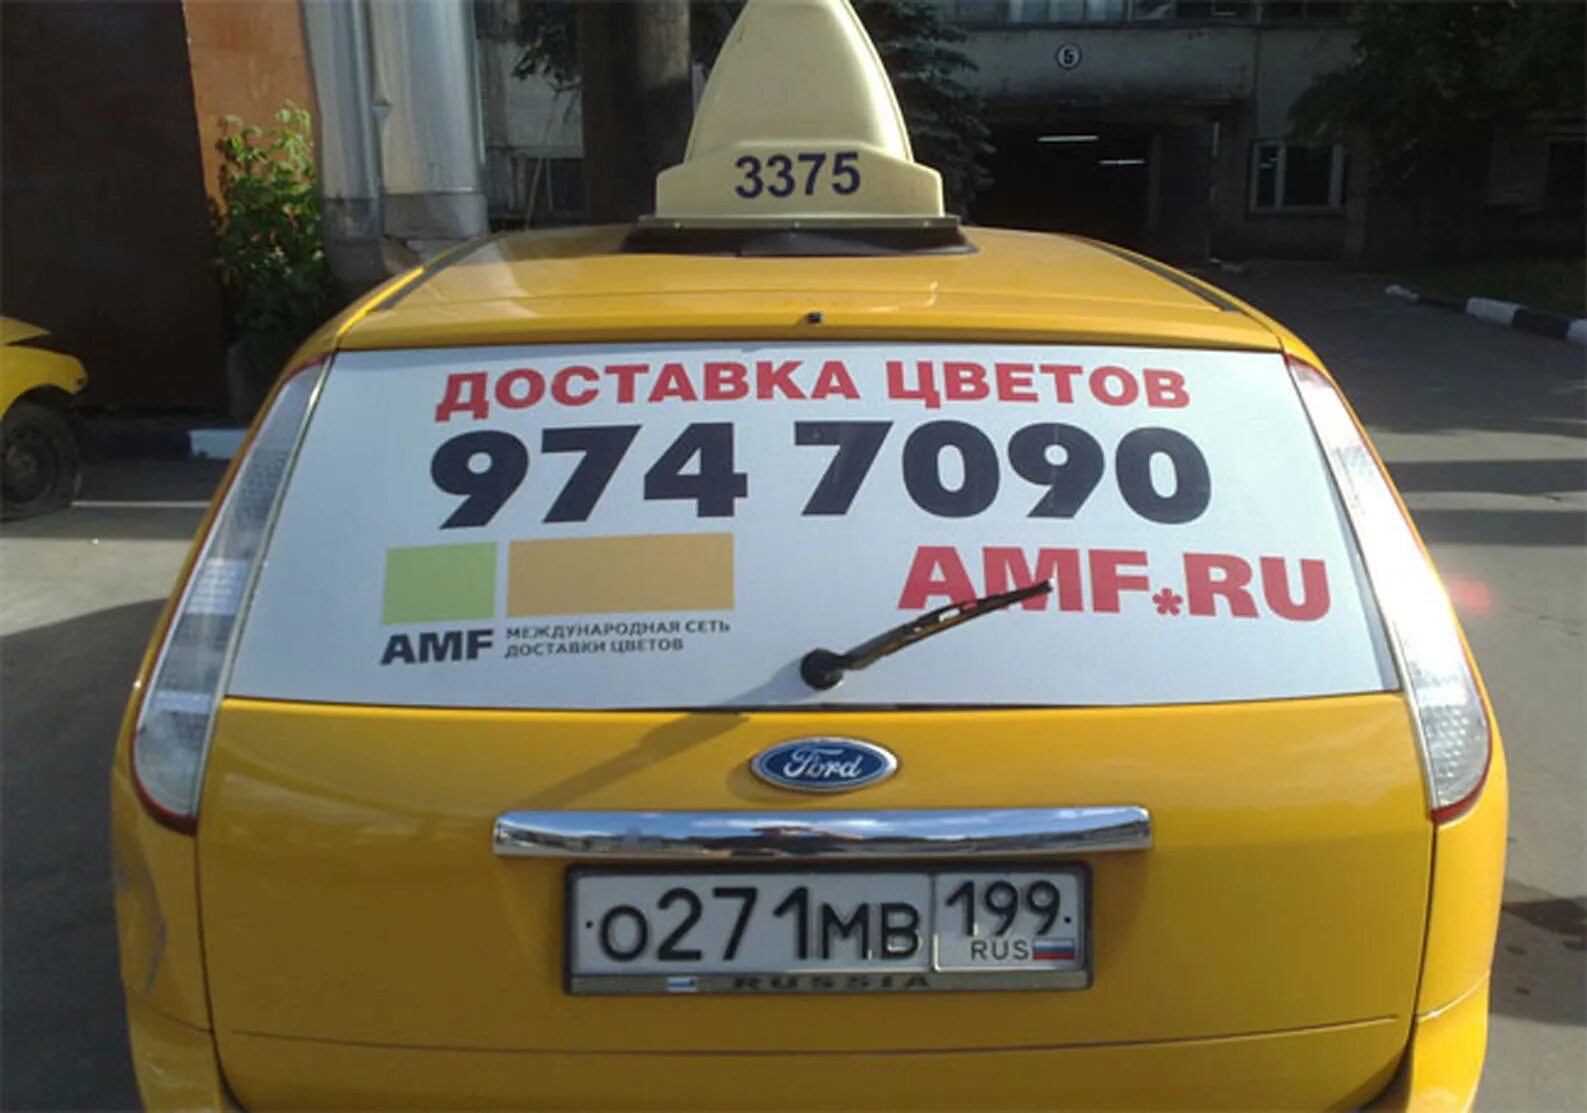 Такси рубль москва. Реклама такси. Реклама такси на машине. Рекламные наклейки на авто. Реклама на заднем стекле такси.